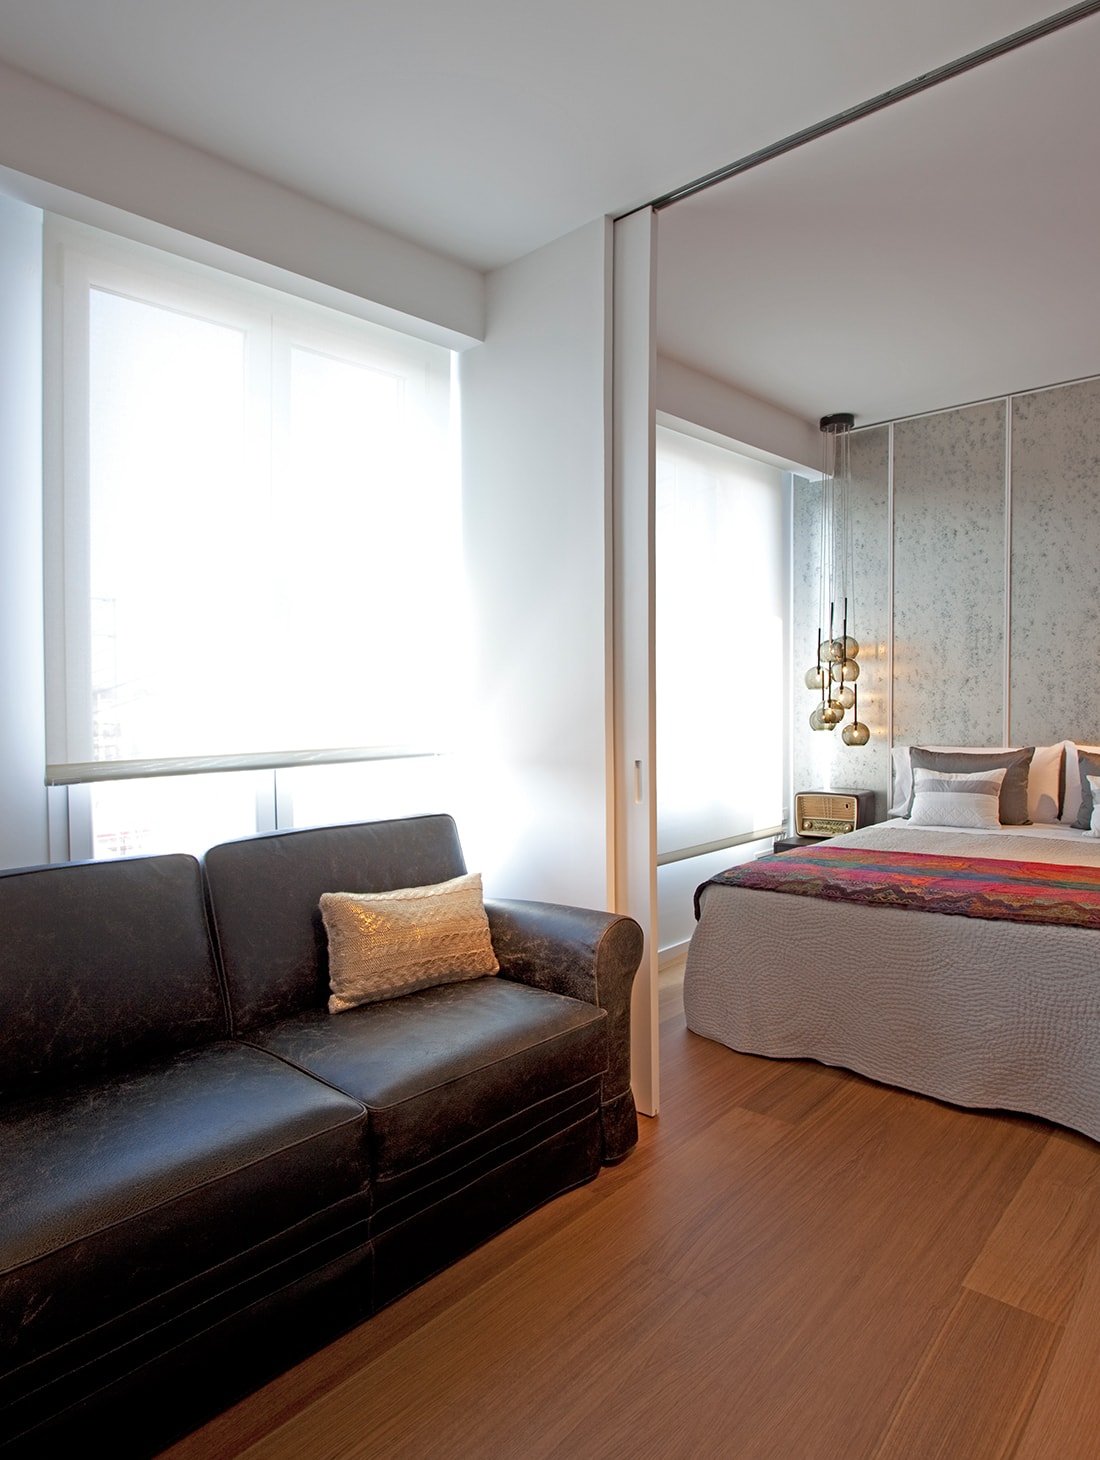 Diseño interiorismo Valencia, apartamento moderno dormitorio y sala estar con piezas vintage.